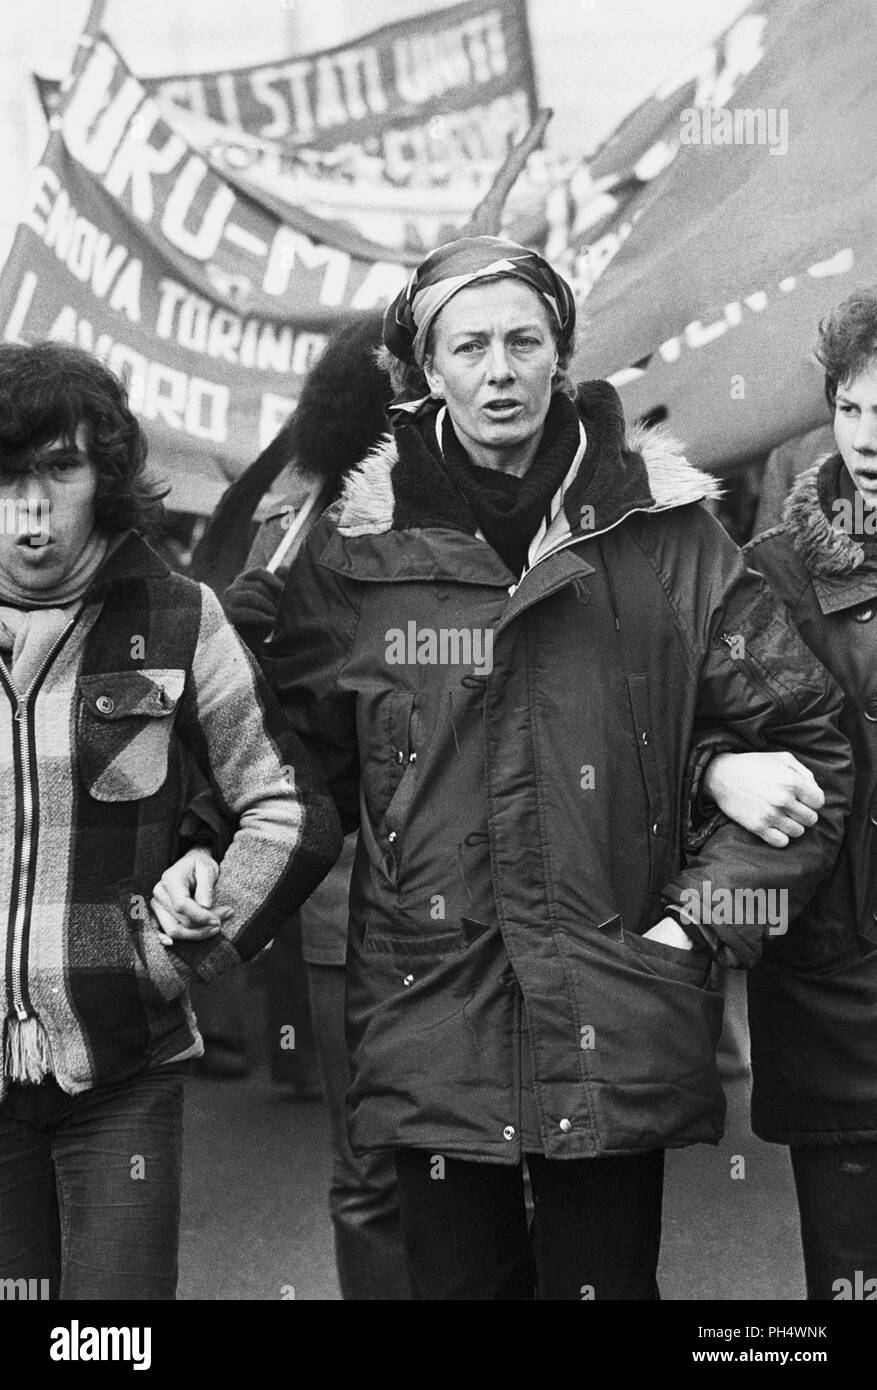 Il grande inglese attrice Vanessa Redgrave è sempre stato politicamente impegnato, qui a Milano (Italia) nel gennaio 1978 partecipa a una dimostrazione durante la comunità internazionale di marzo organizzato dalla tomba (Trozkista ispirato) per la difesa dei diritti dei lavoratori. Foto Stock